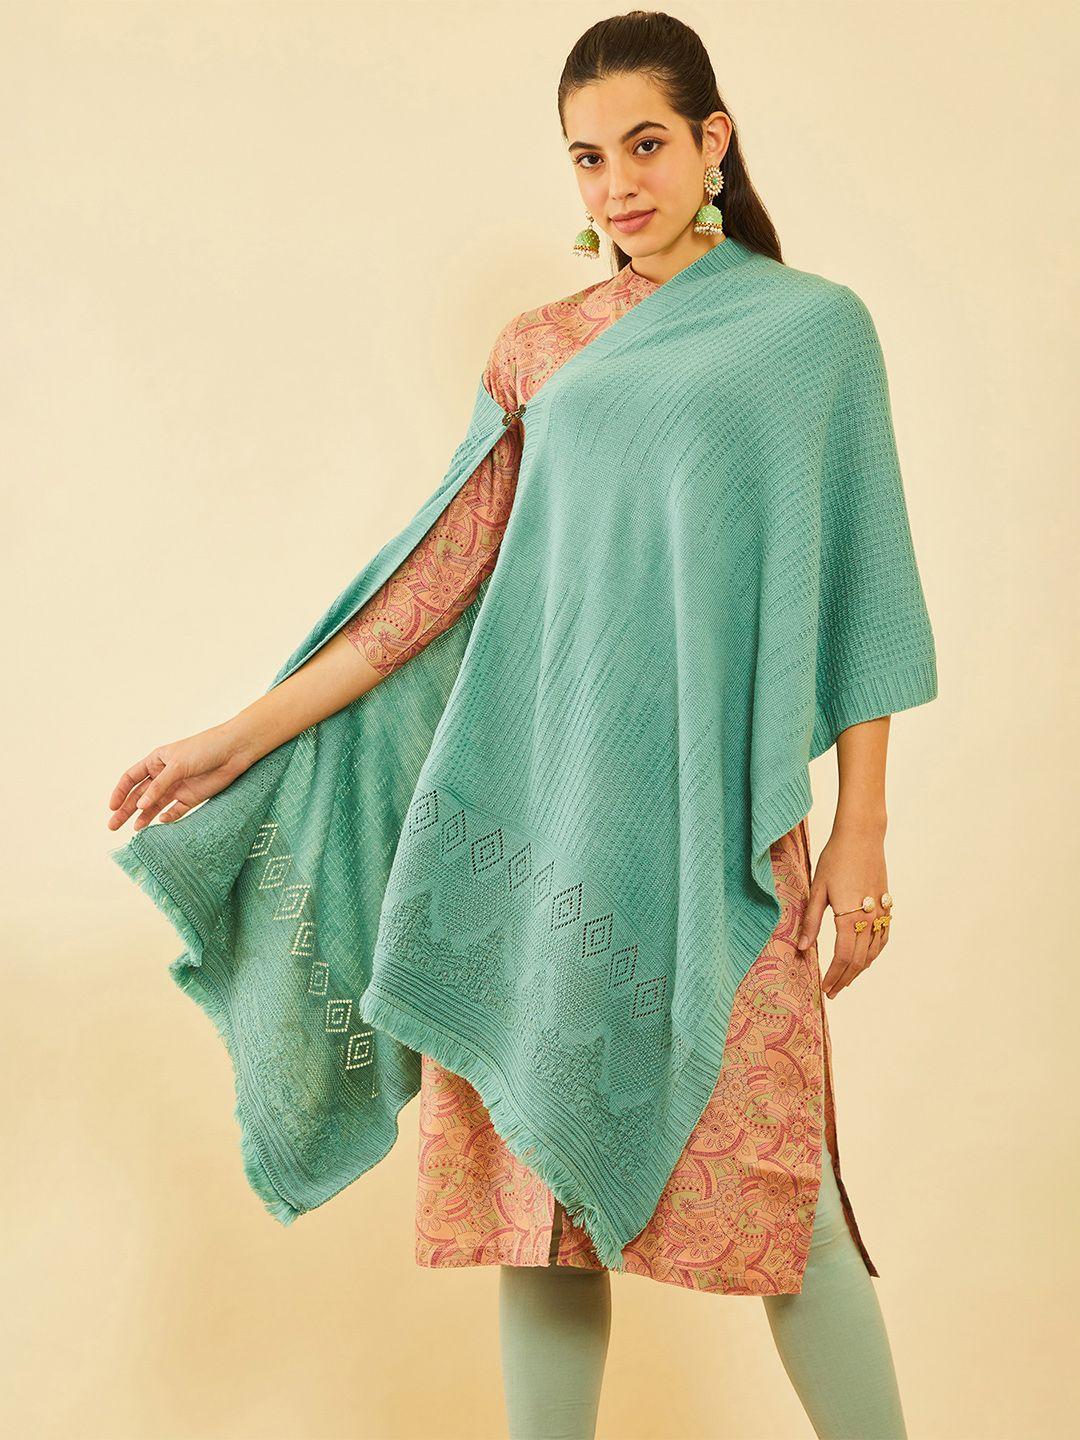 soch woven design acrylic shawl